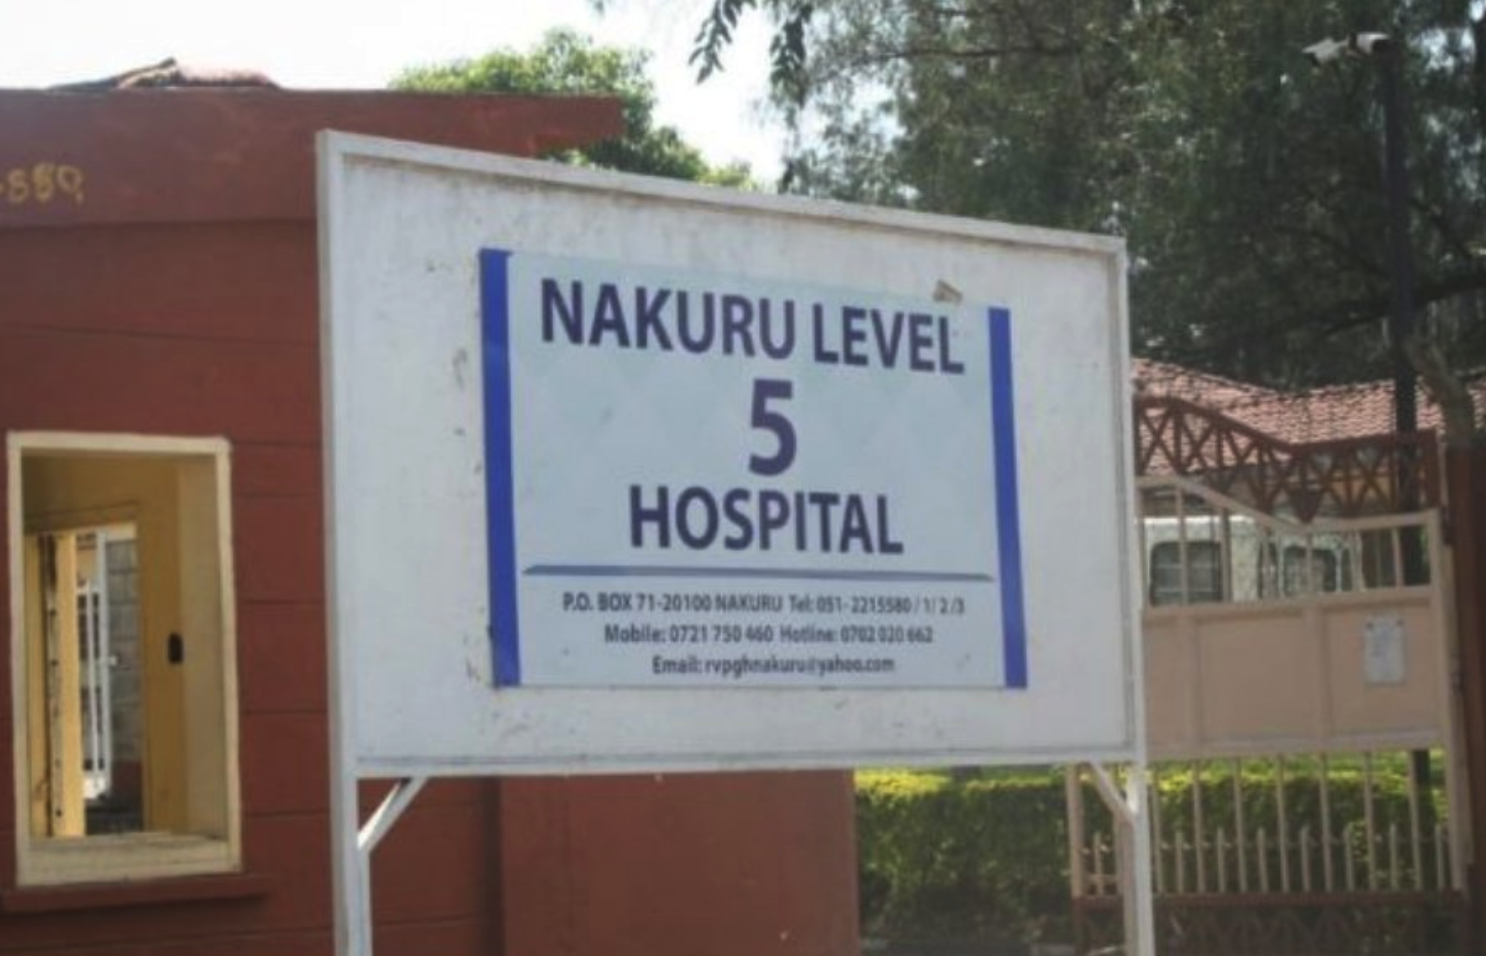 Nakuru Level 5 Hospital. 